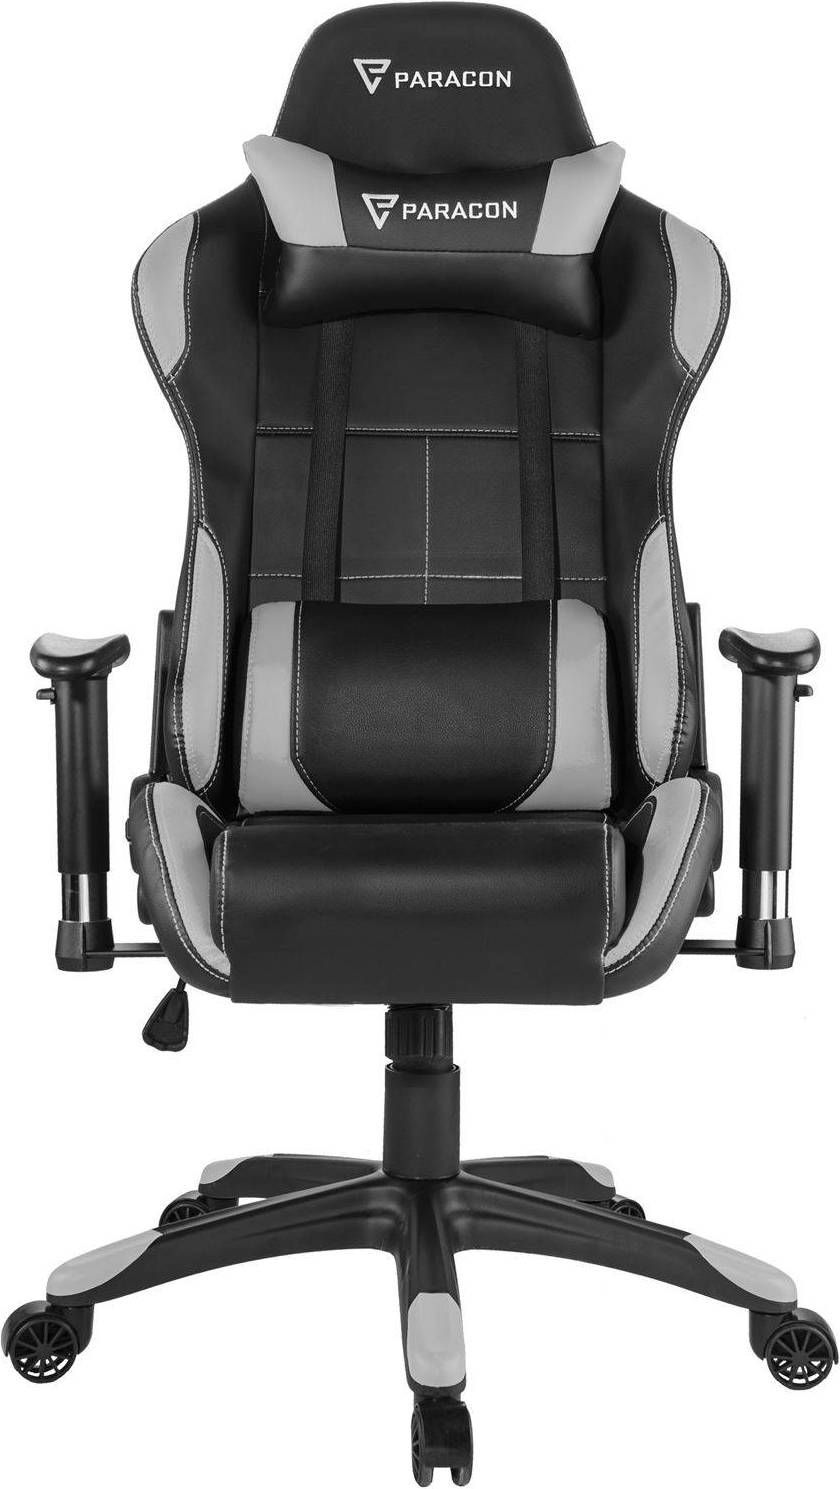  Bild på Paracon Rogue Gaming Chair - Black/Grey gamingstol